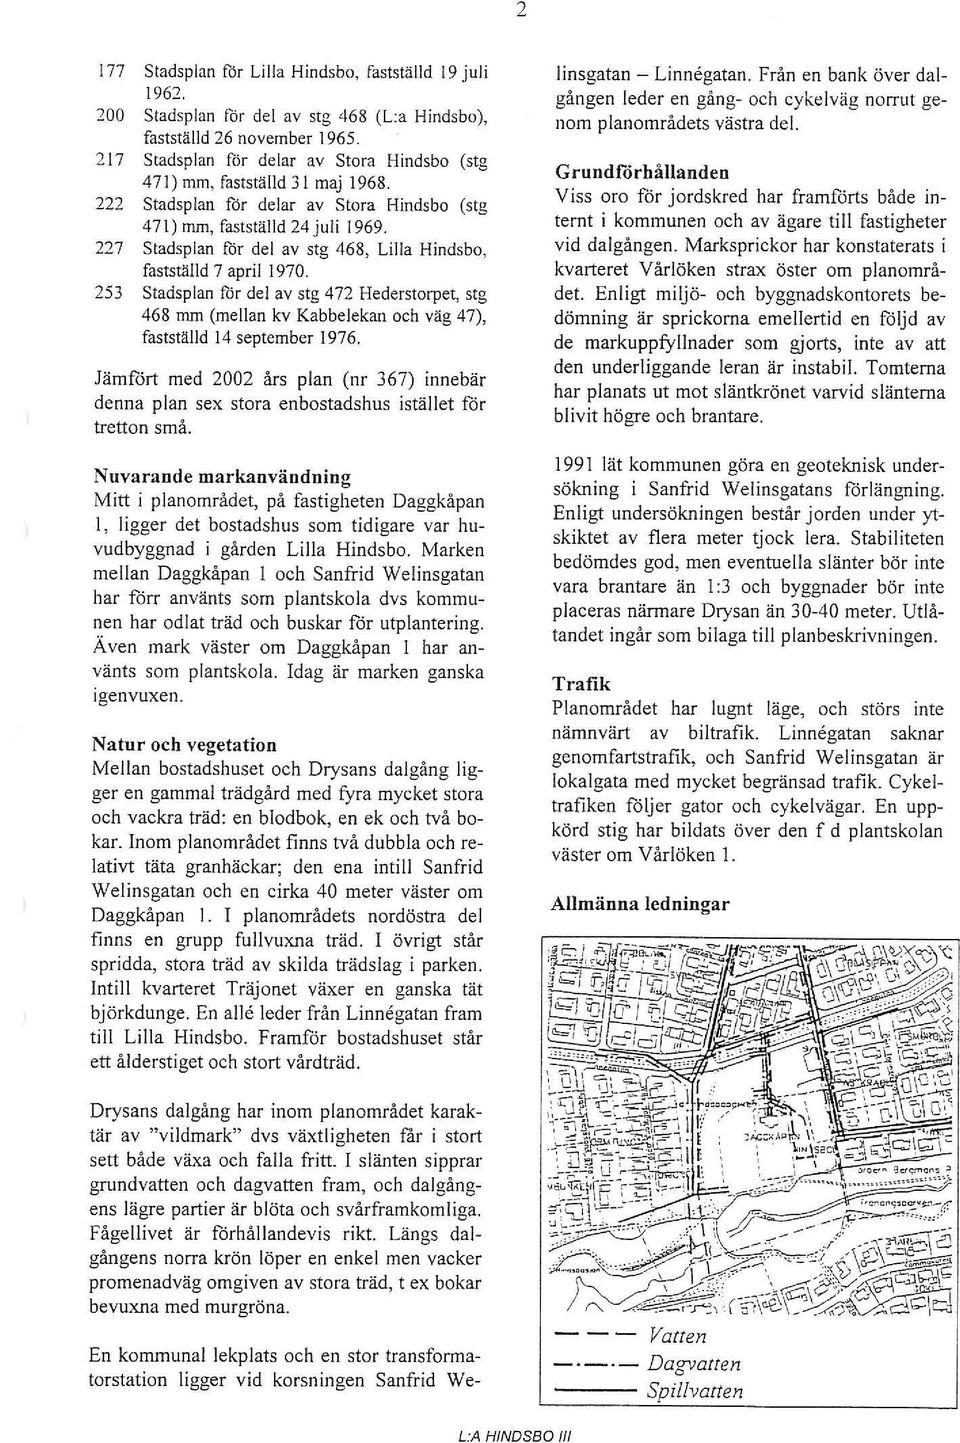 227 Stadsplan för del av stg 468, Lilla Hindsb, fastställd 7 april 1970. 253 Stadsplan Ilir del av stg 472 Hederstrpet, stg 468 mm (mellan kv Kabbelekan ch väg 47), fastställd 14 september 1976.